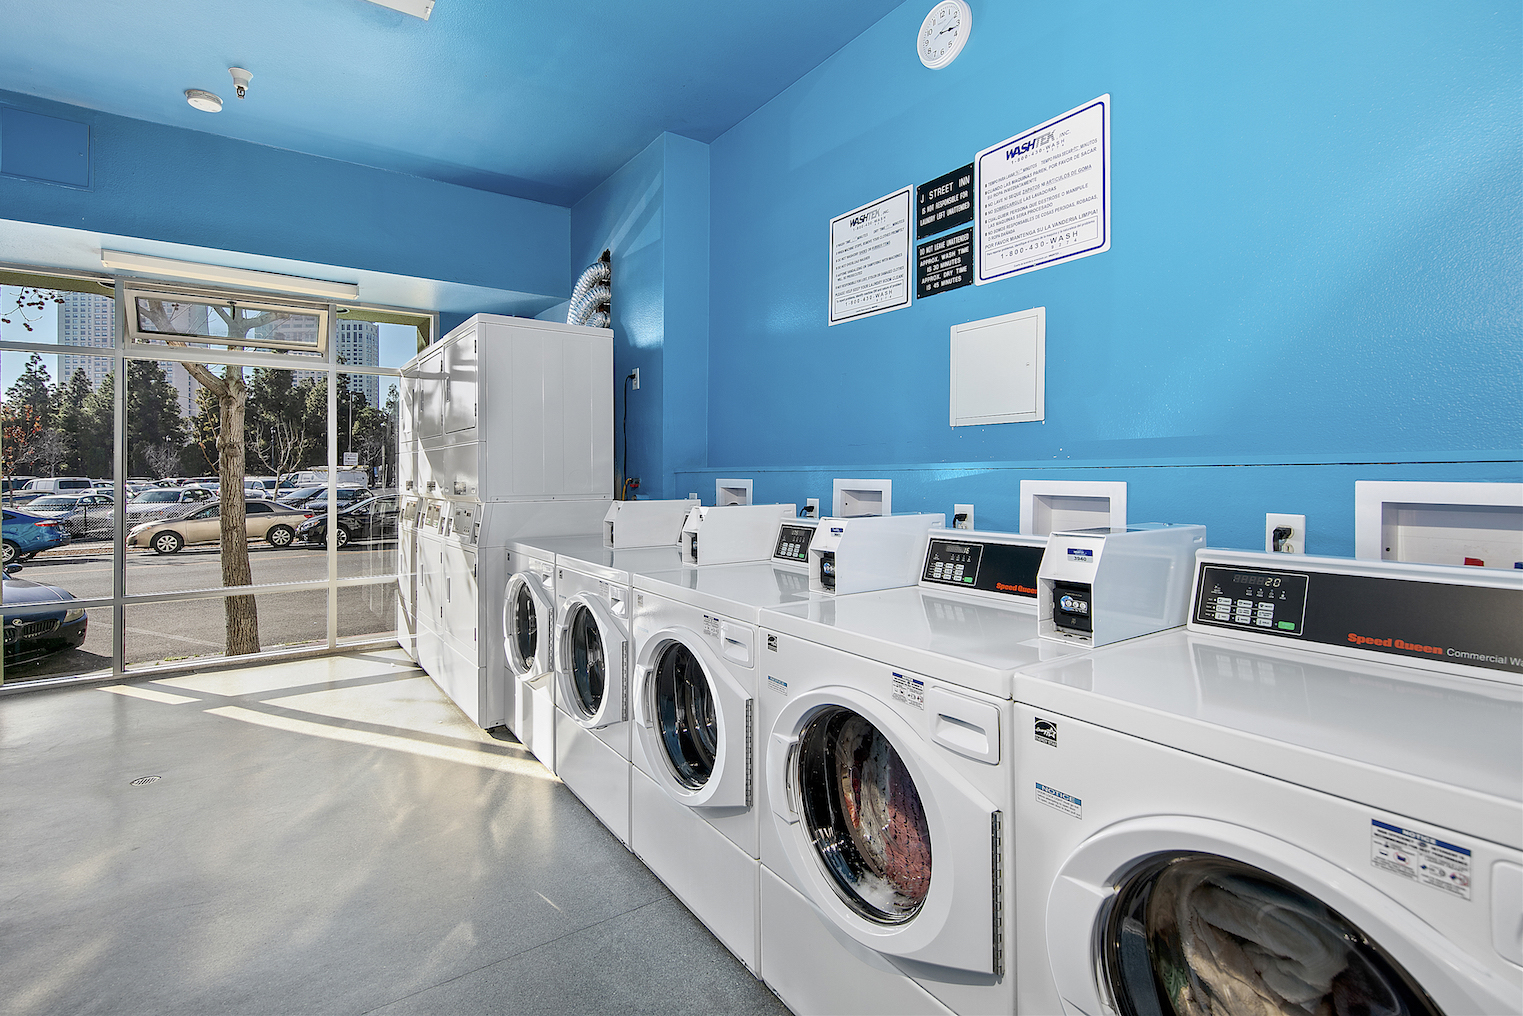 J Street Flats Laundry Facility